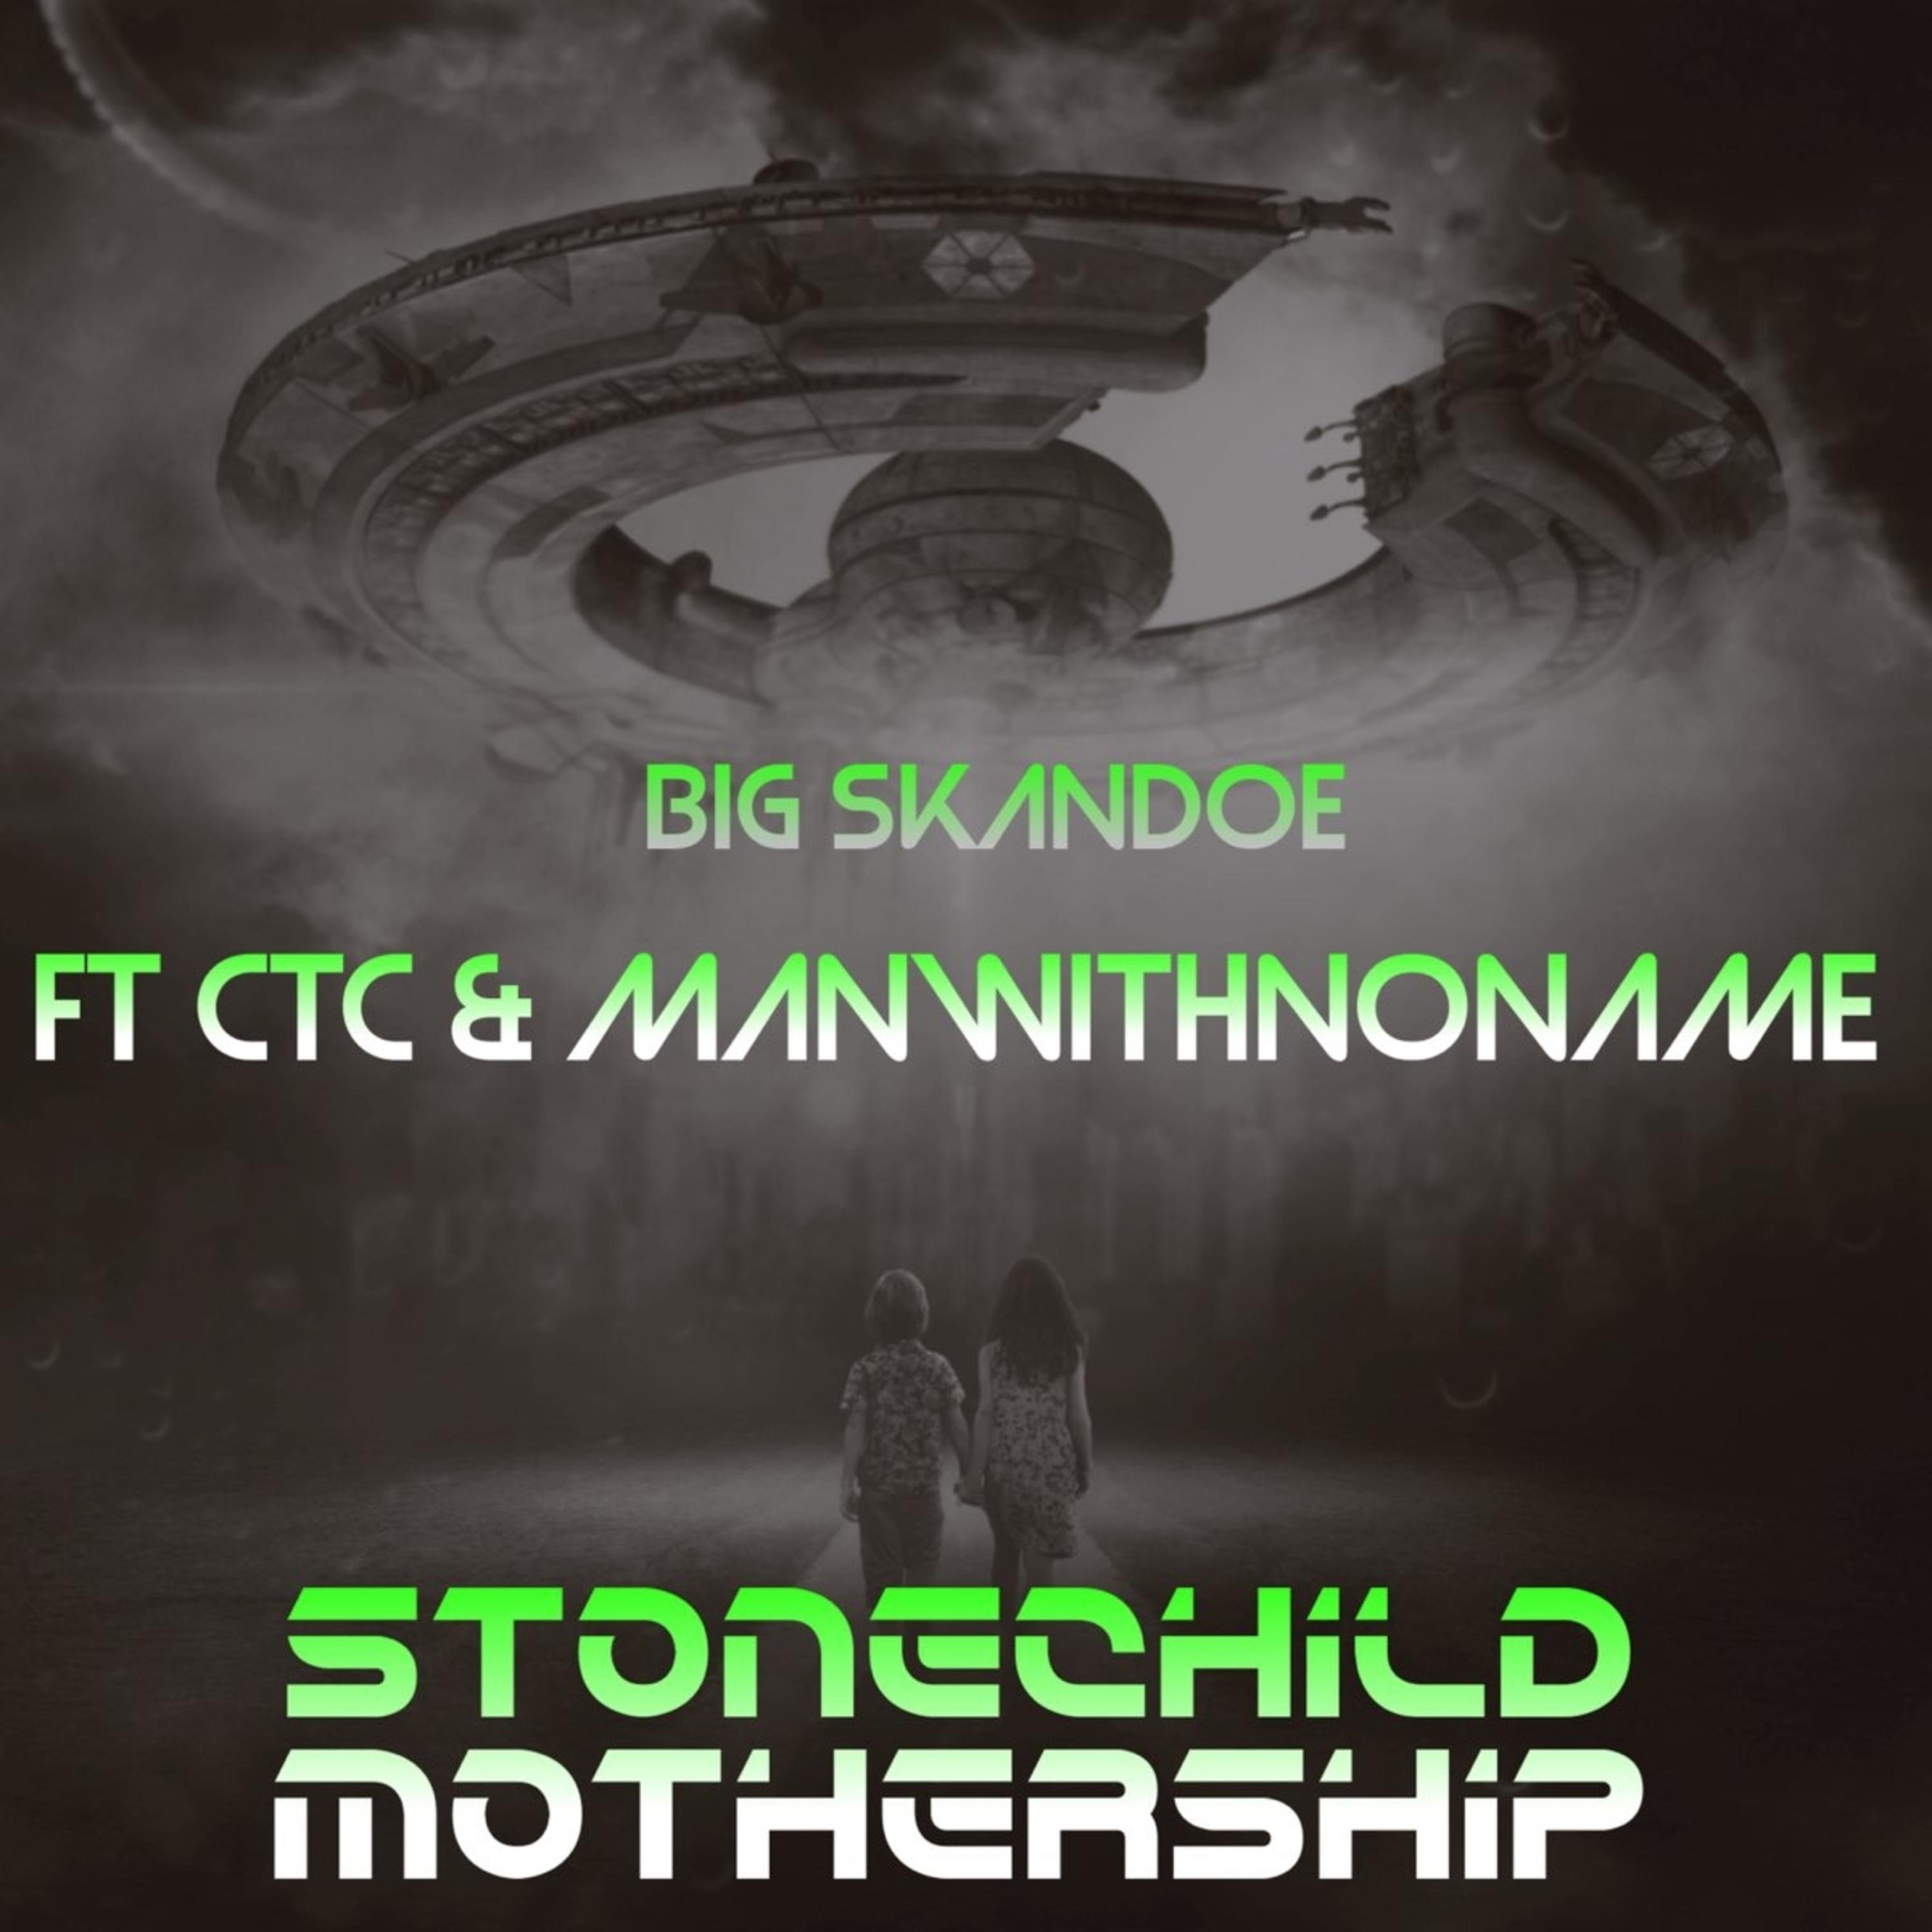 Big Skandoe - Stonechild Mothership